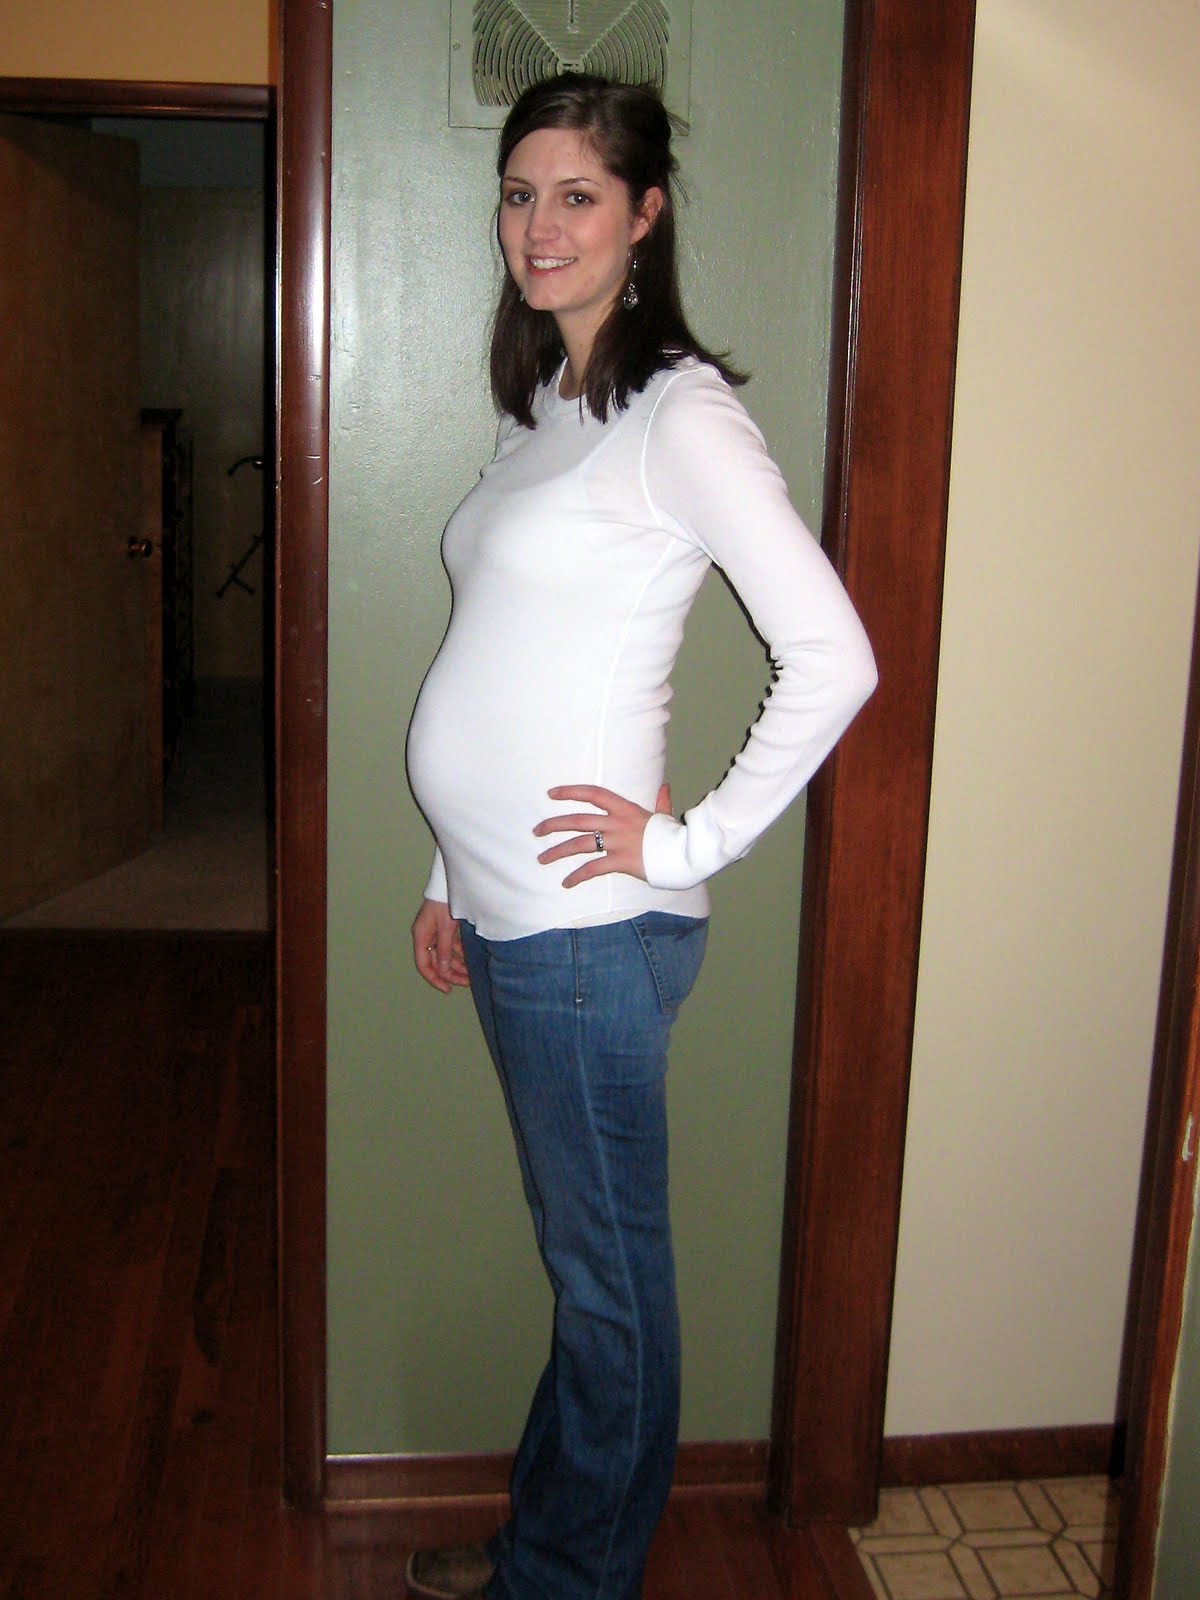 Живот на 4 месяце беременности